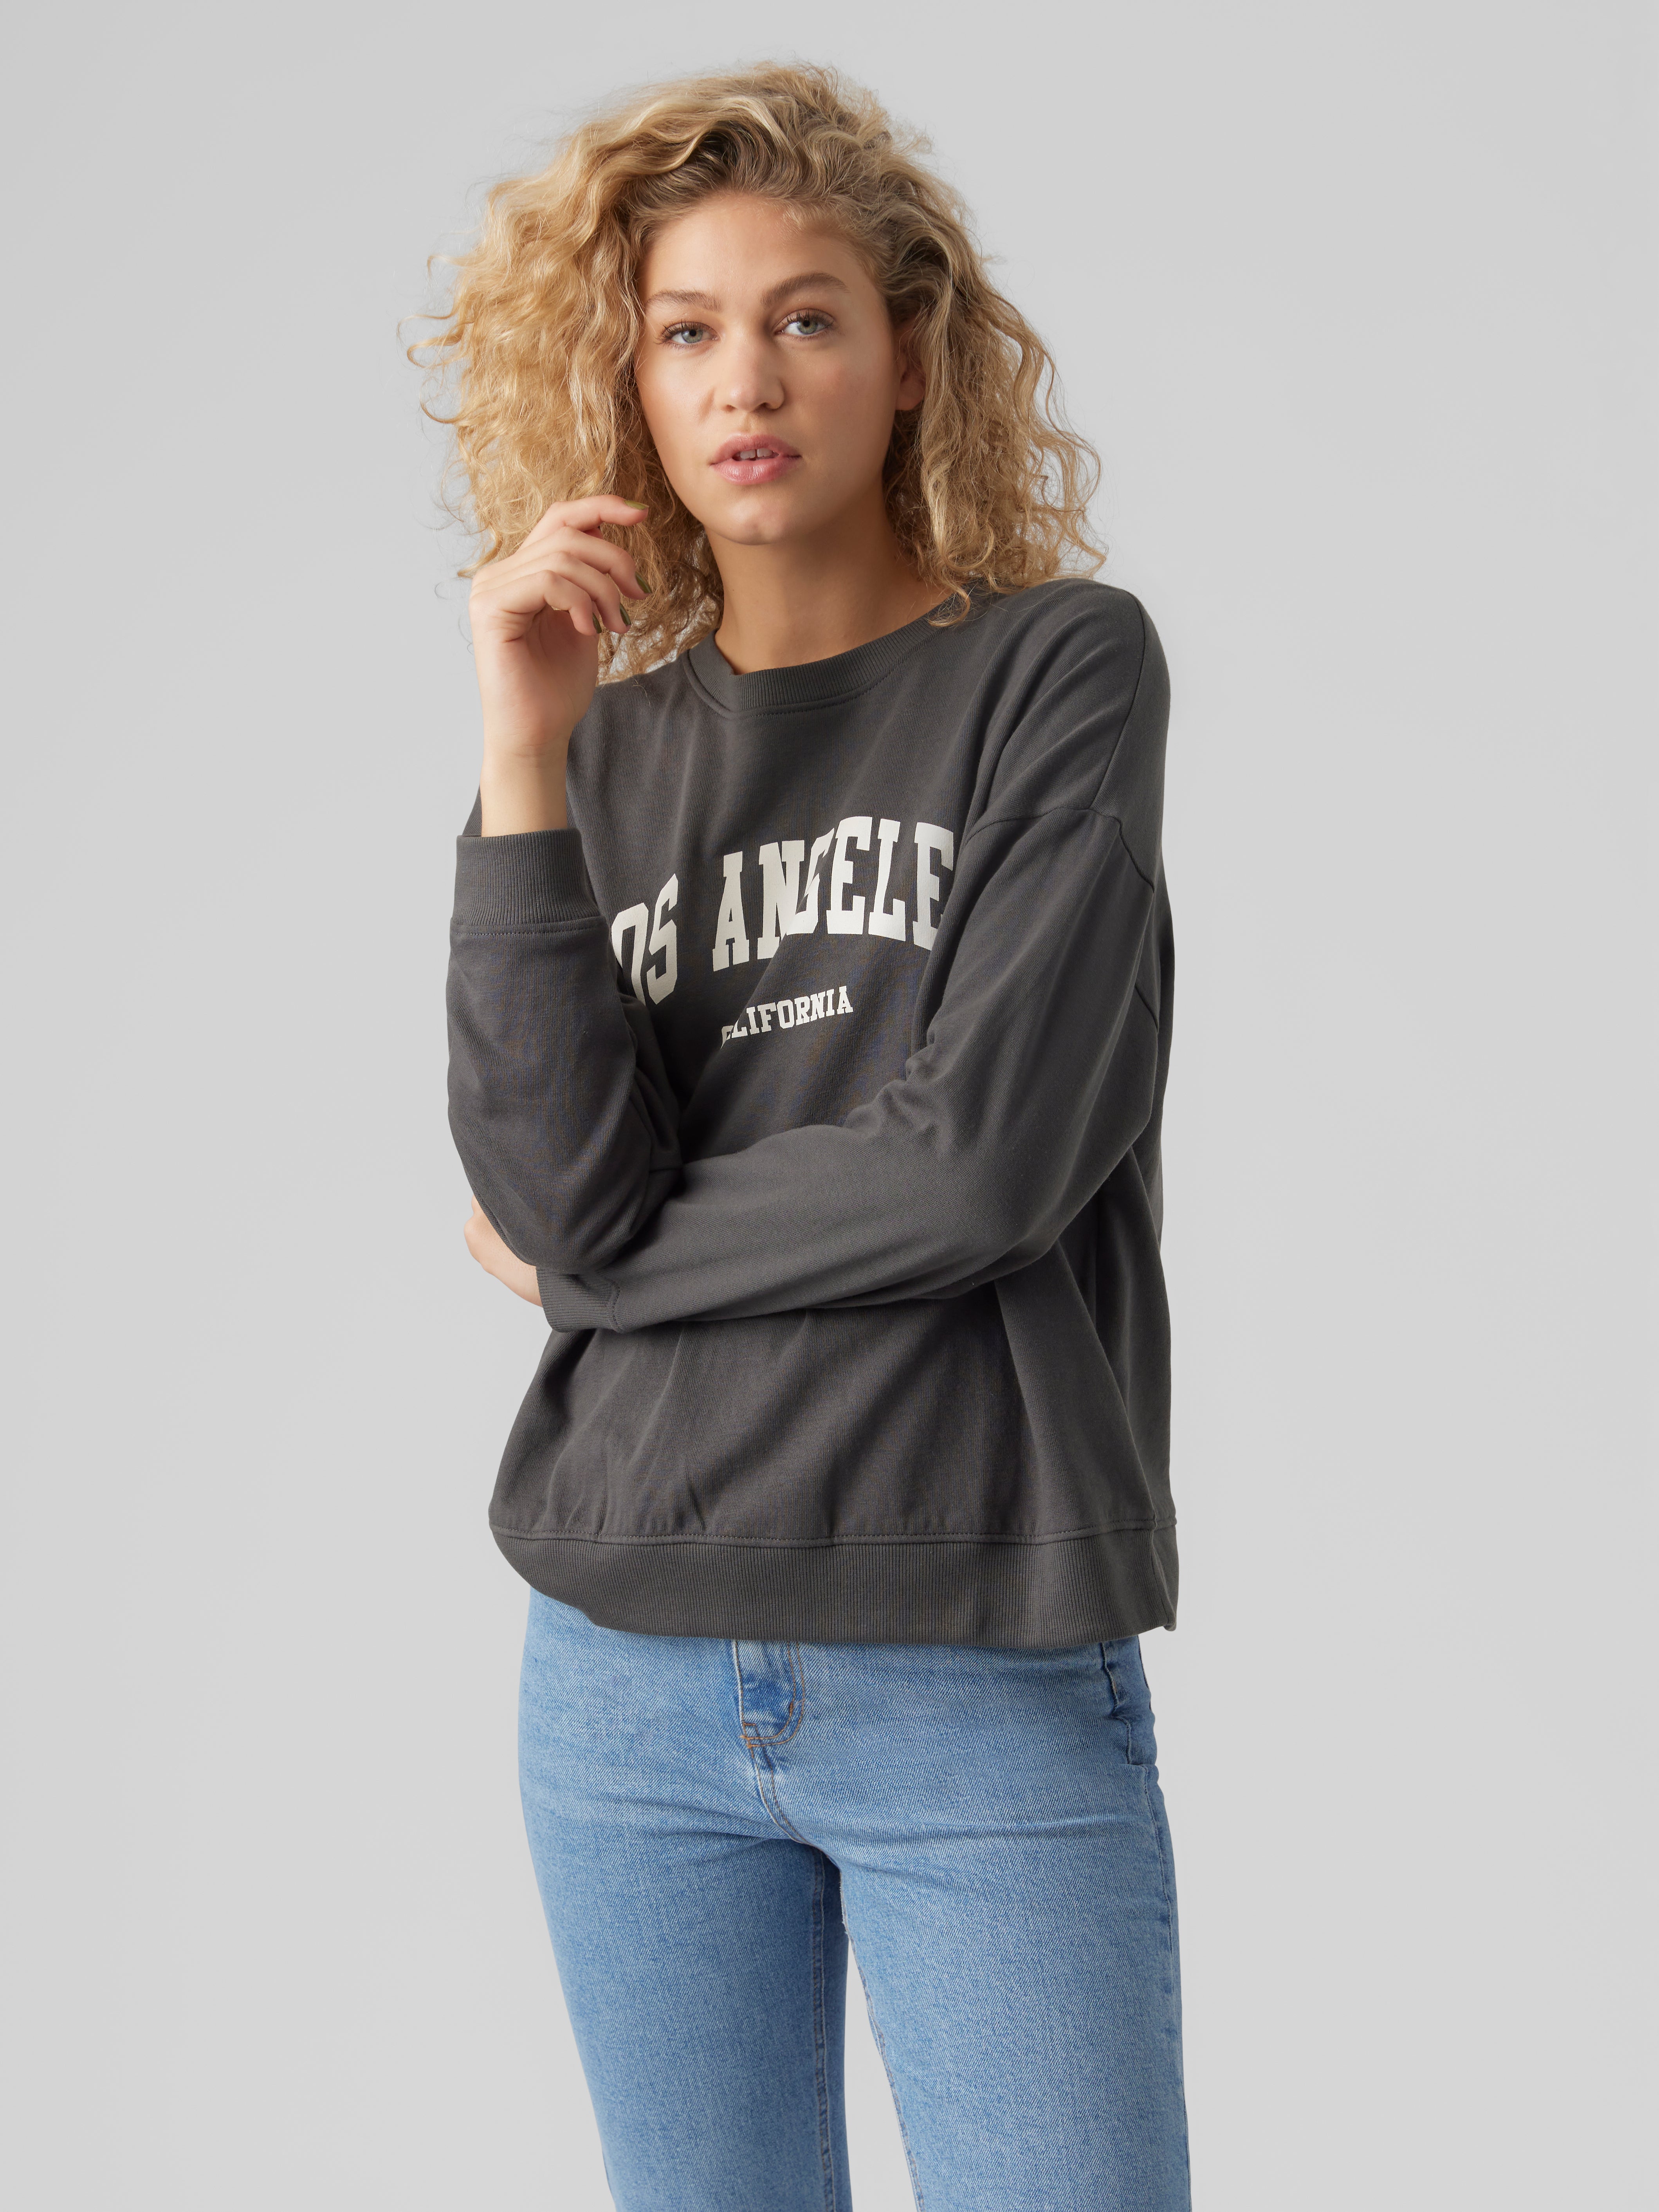 Vero Moda sweatshirt WOMEN FASHION Jumpers & Sweatshirts NO STYLE discount 57% Beige/Navy Blue 